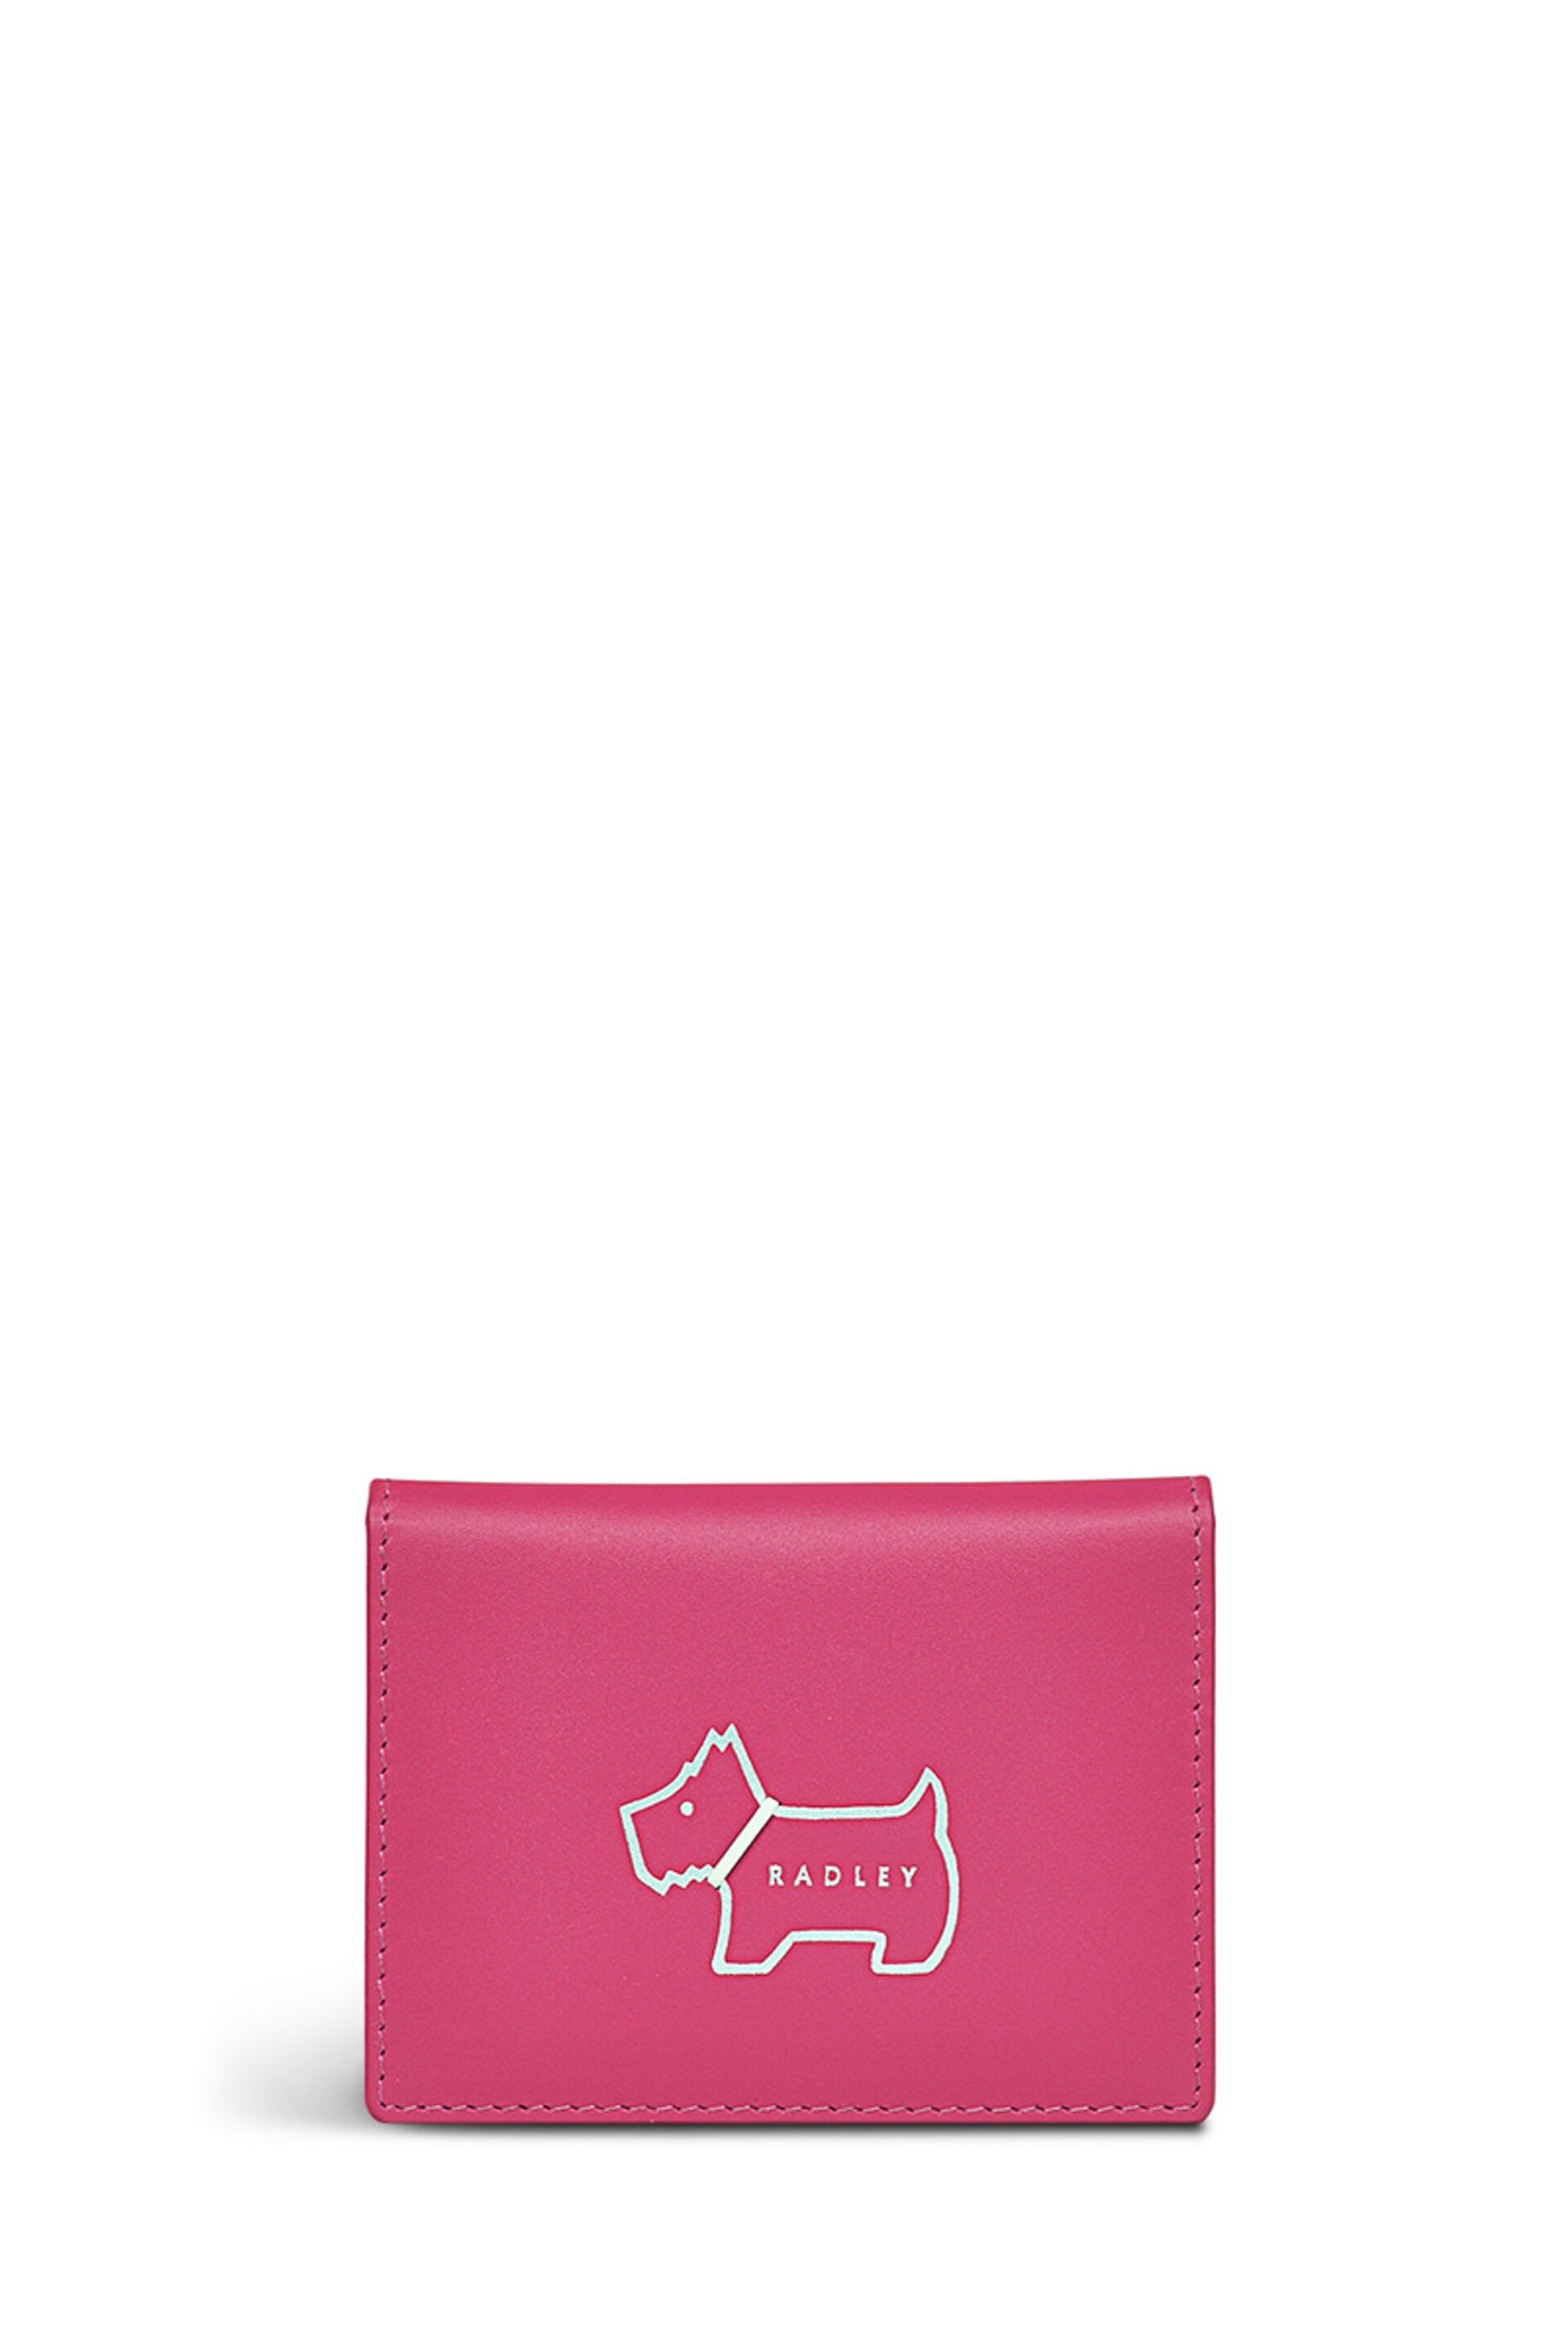 Radley London Pink Heritage Dog Outline Small Cardholder - Image 1 of 4